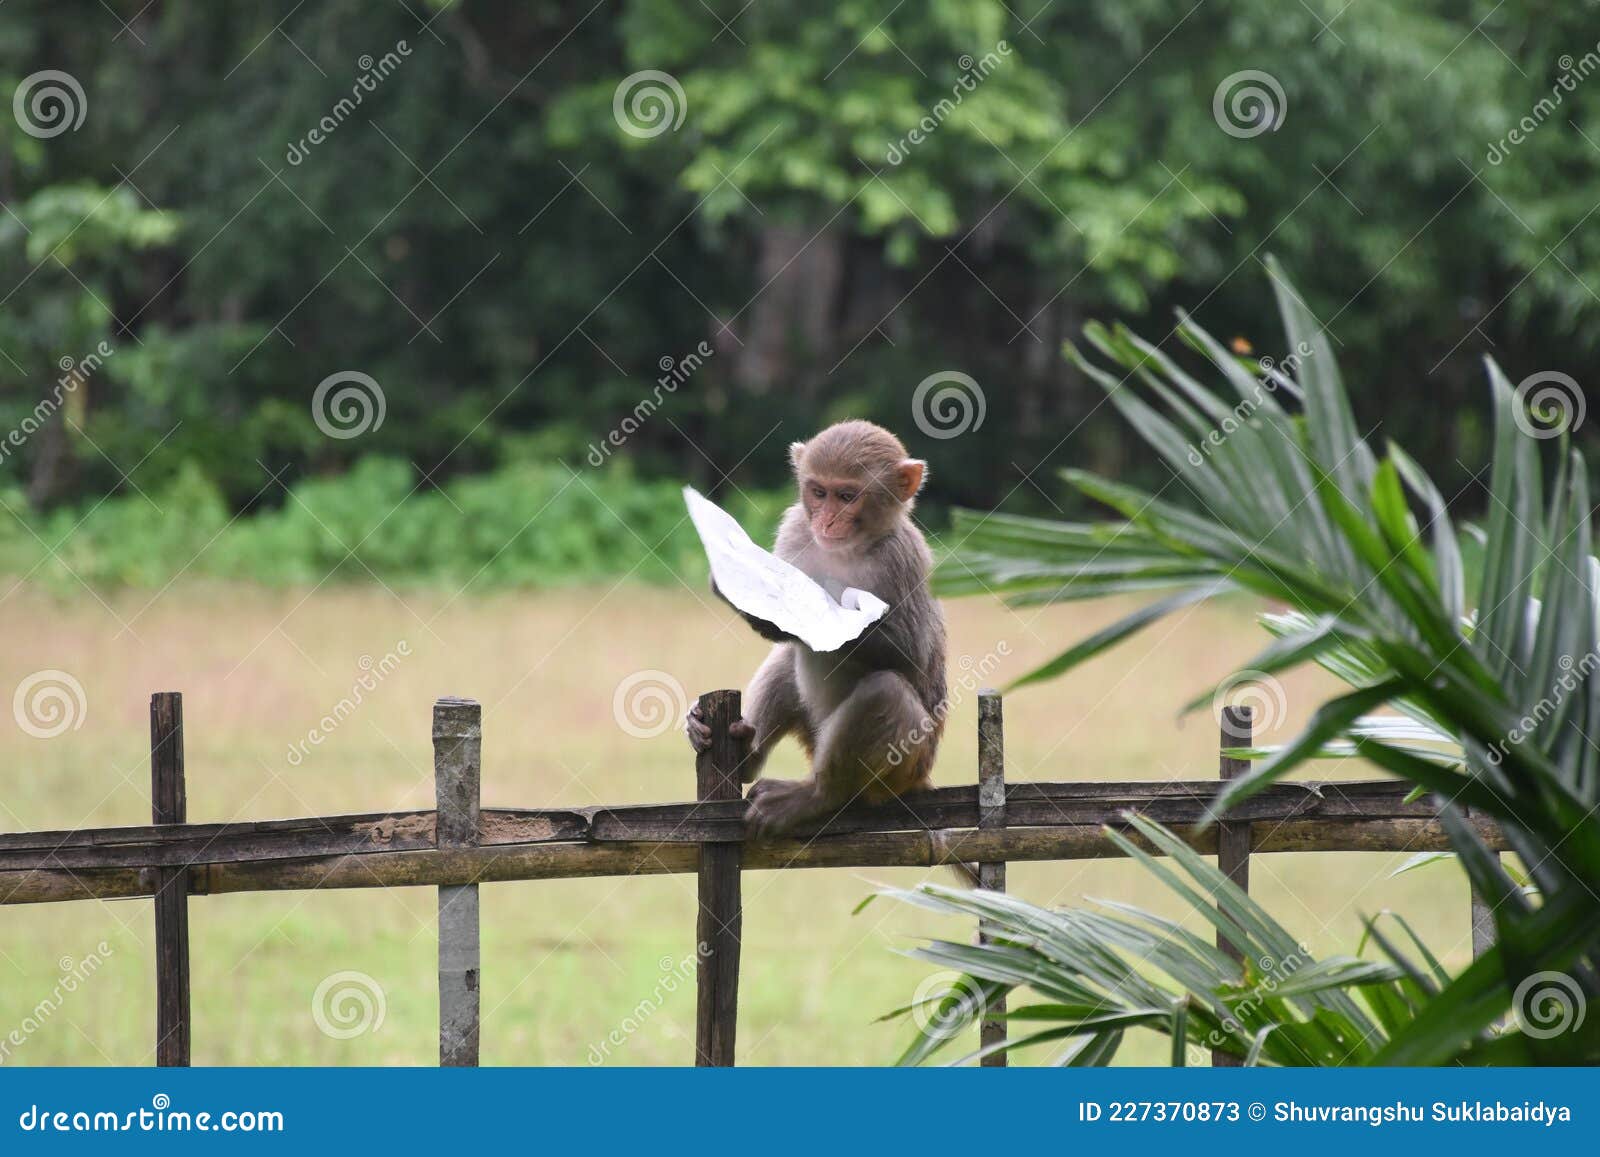 Jogos do macaco com cordas foto de stock. Imagem de bambu - 26182422